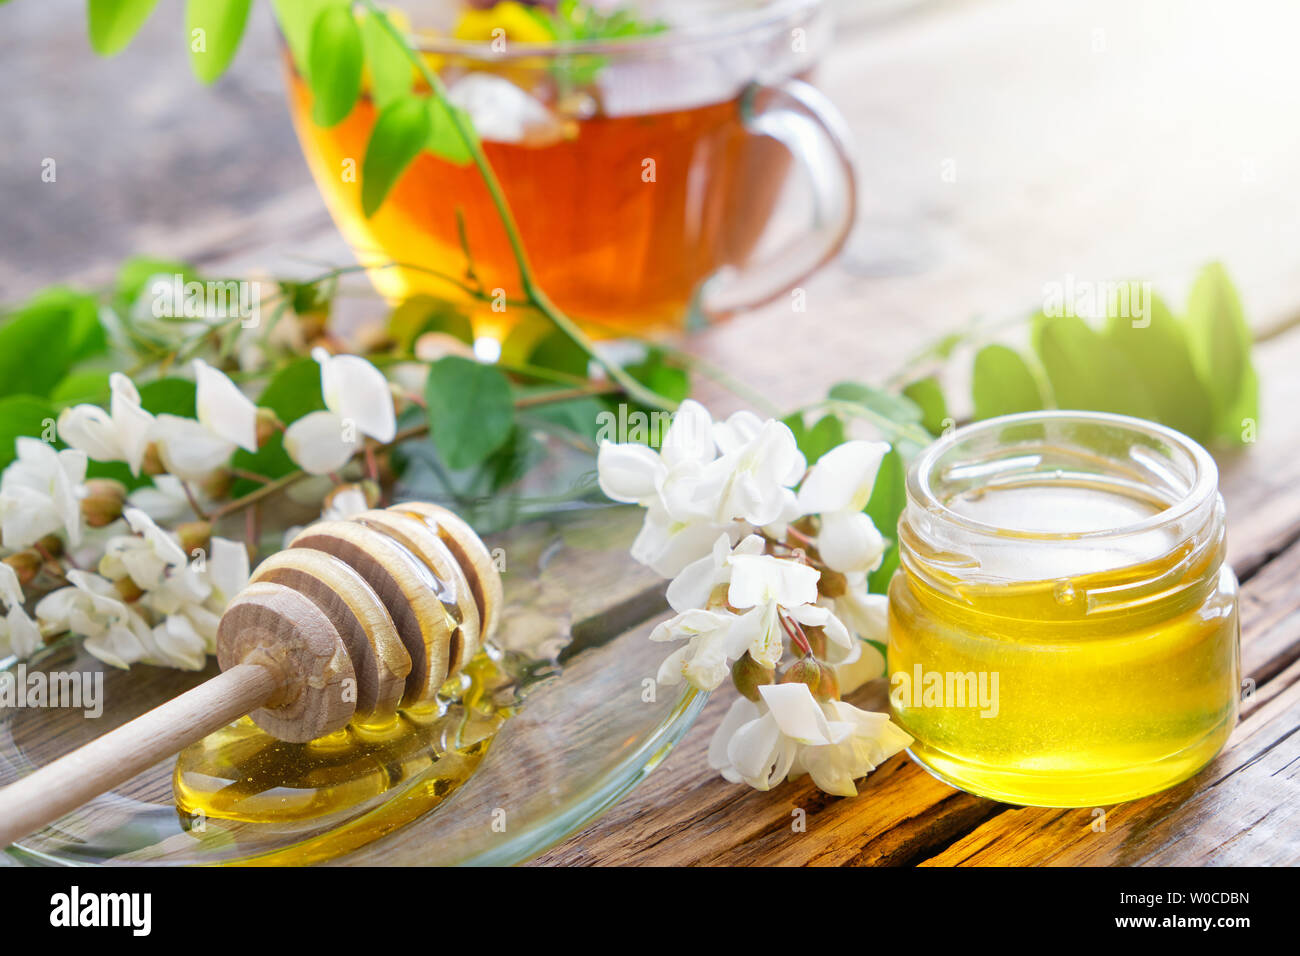 Tarro de miel de flores de acacia, madera y penetrador saludable taza de té de hierbas. Foto de stock